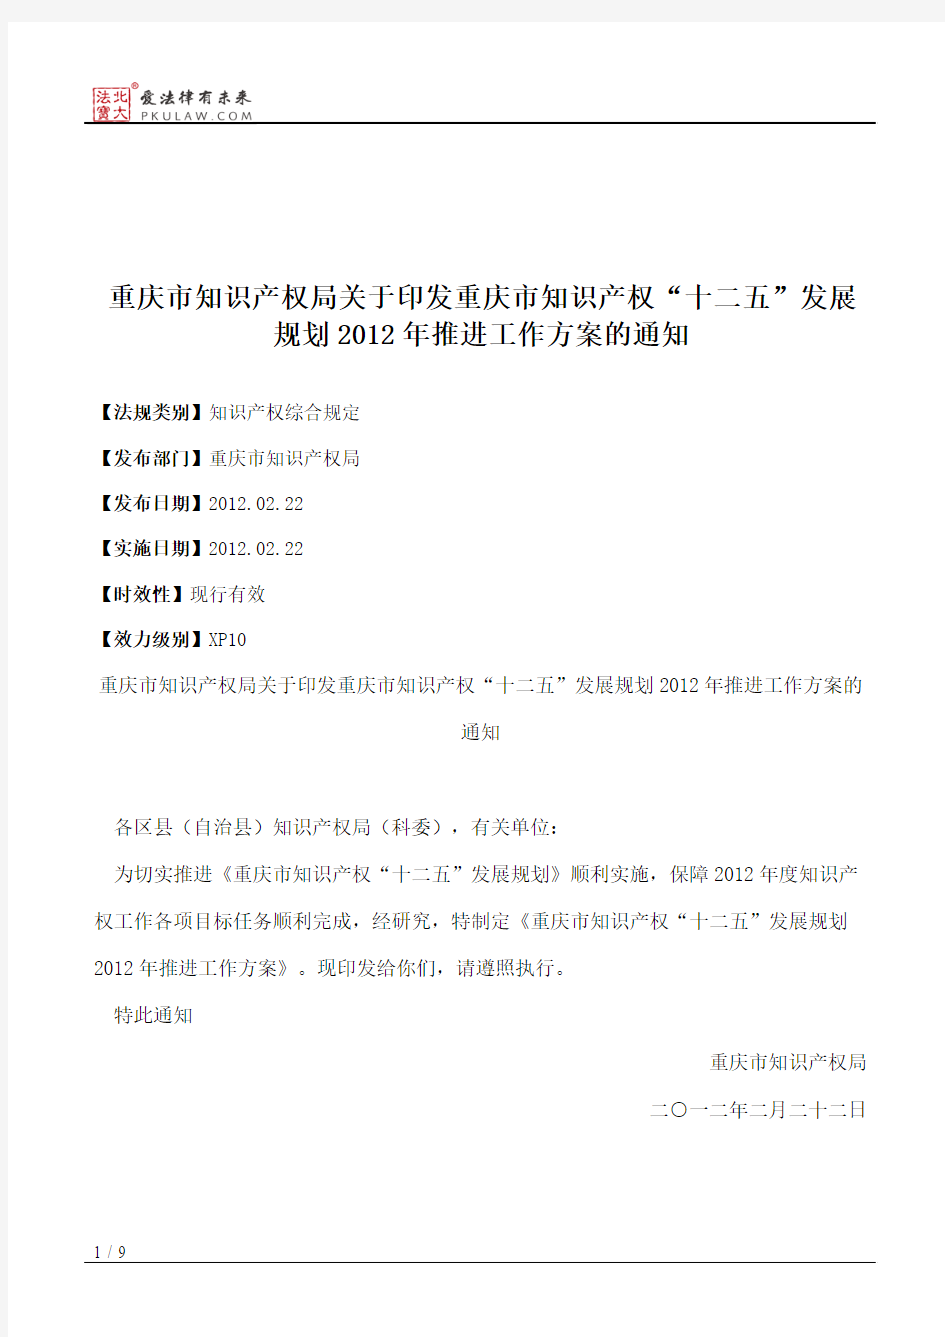 重庆市知识产权局关于印发重庆市知识产权“十二五”发展规划2012